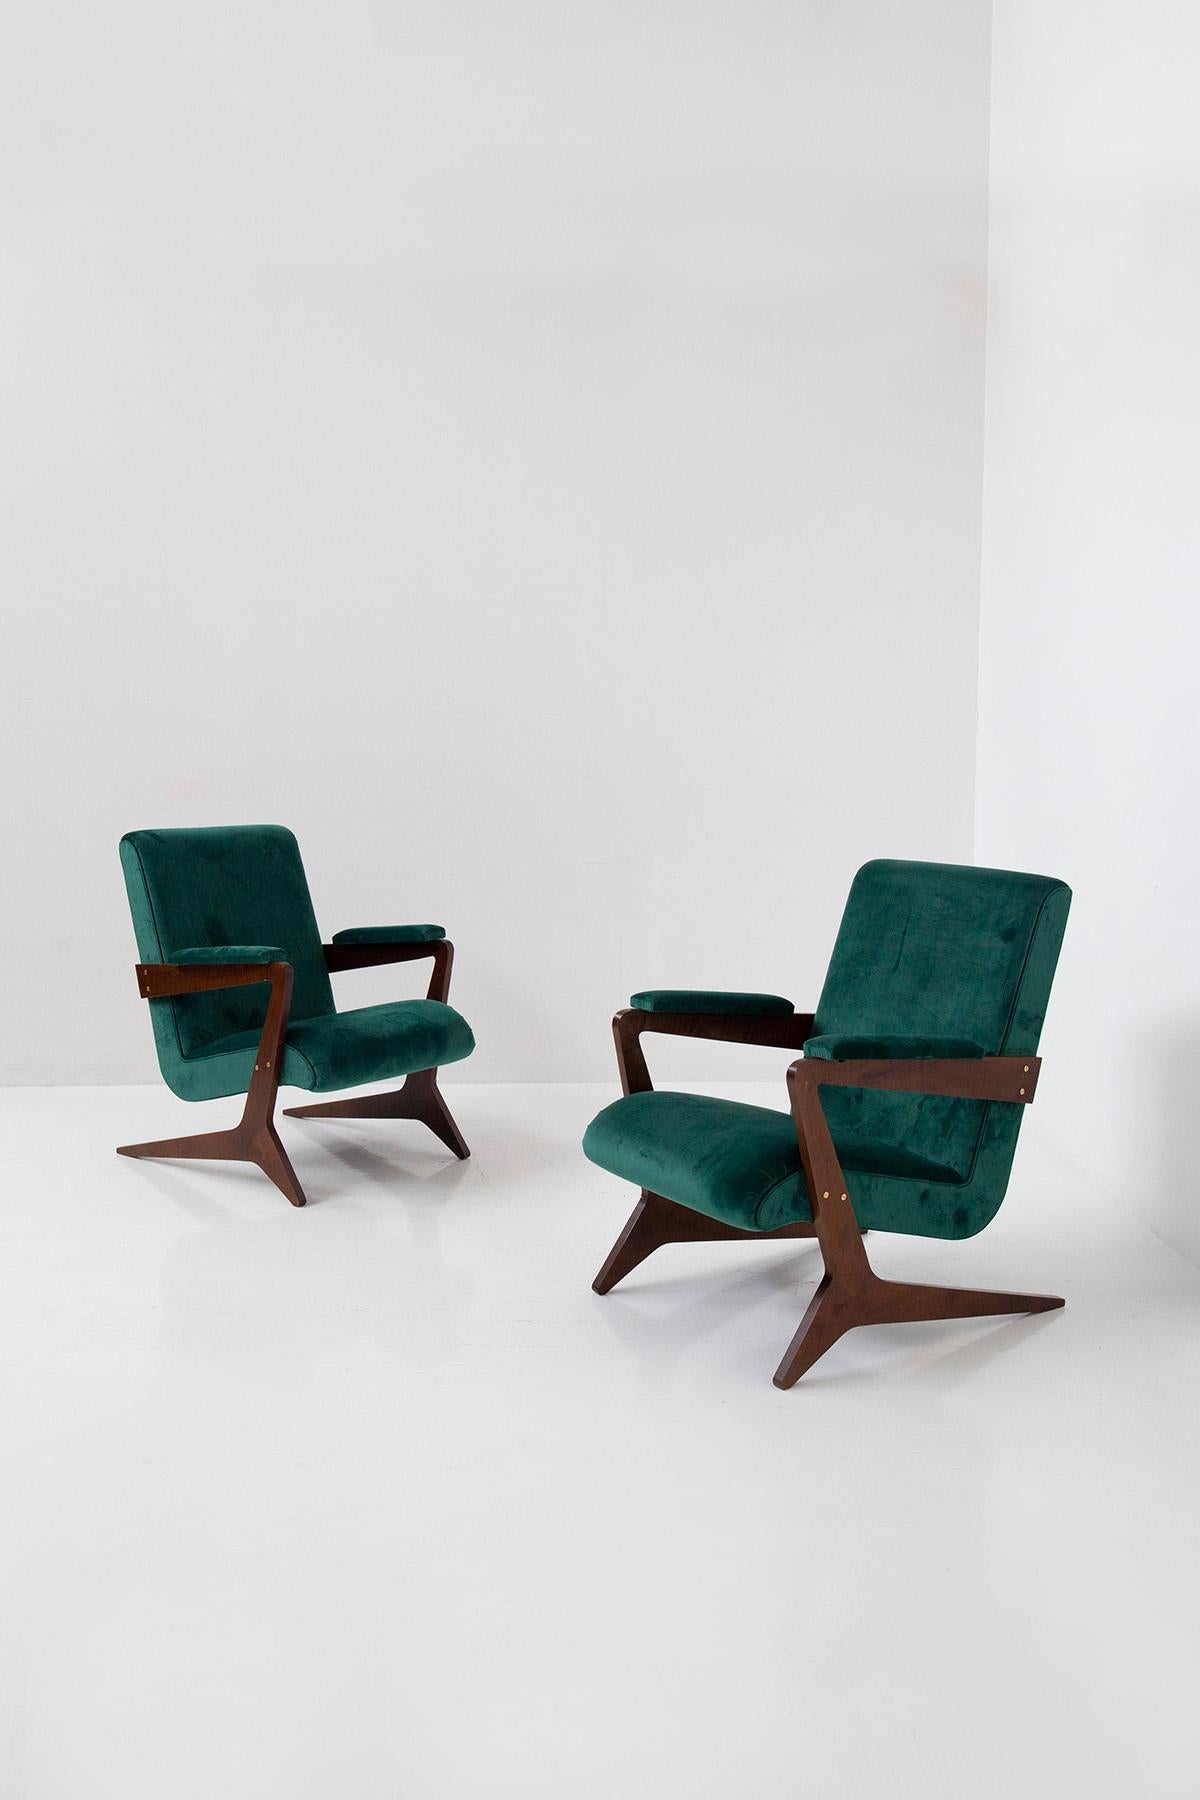 it diesem fesselnden Paar brasilianischer geometrischer Sessel, einer Verkörperung von Modernität und geometrischer Eleganz, können Sie sich in das pulsierende Herz Brasiliens des 20. Diese mit Präzision und Flair gefertigten Stühle sind ein Zeugnis